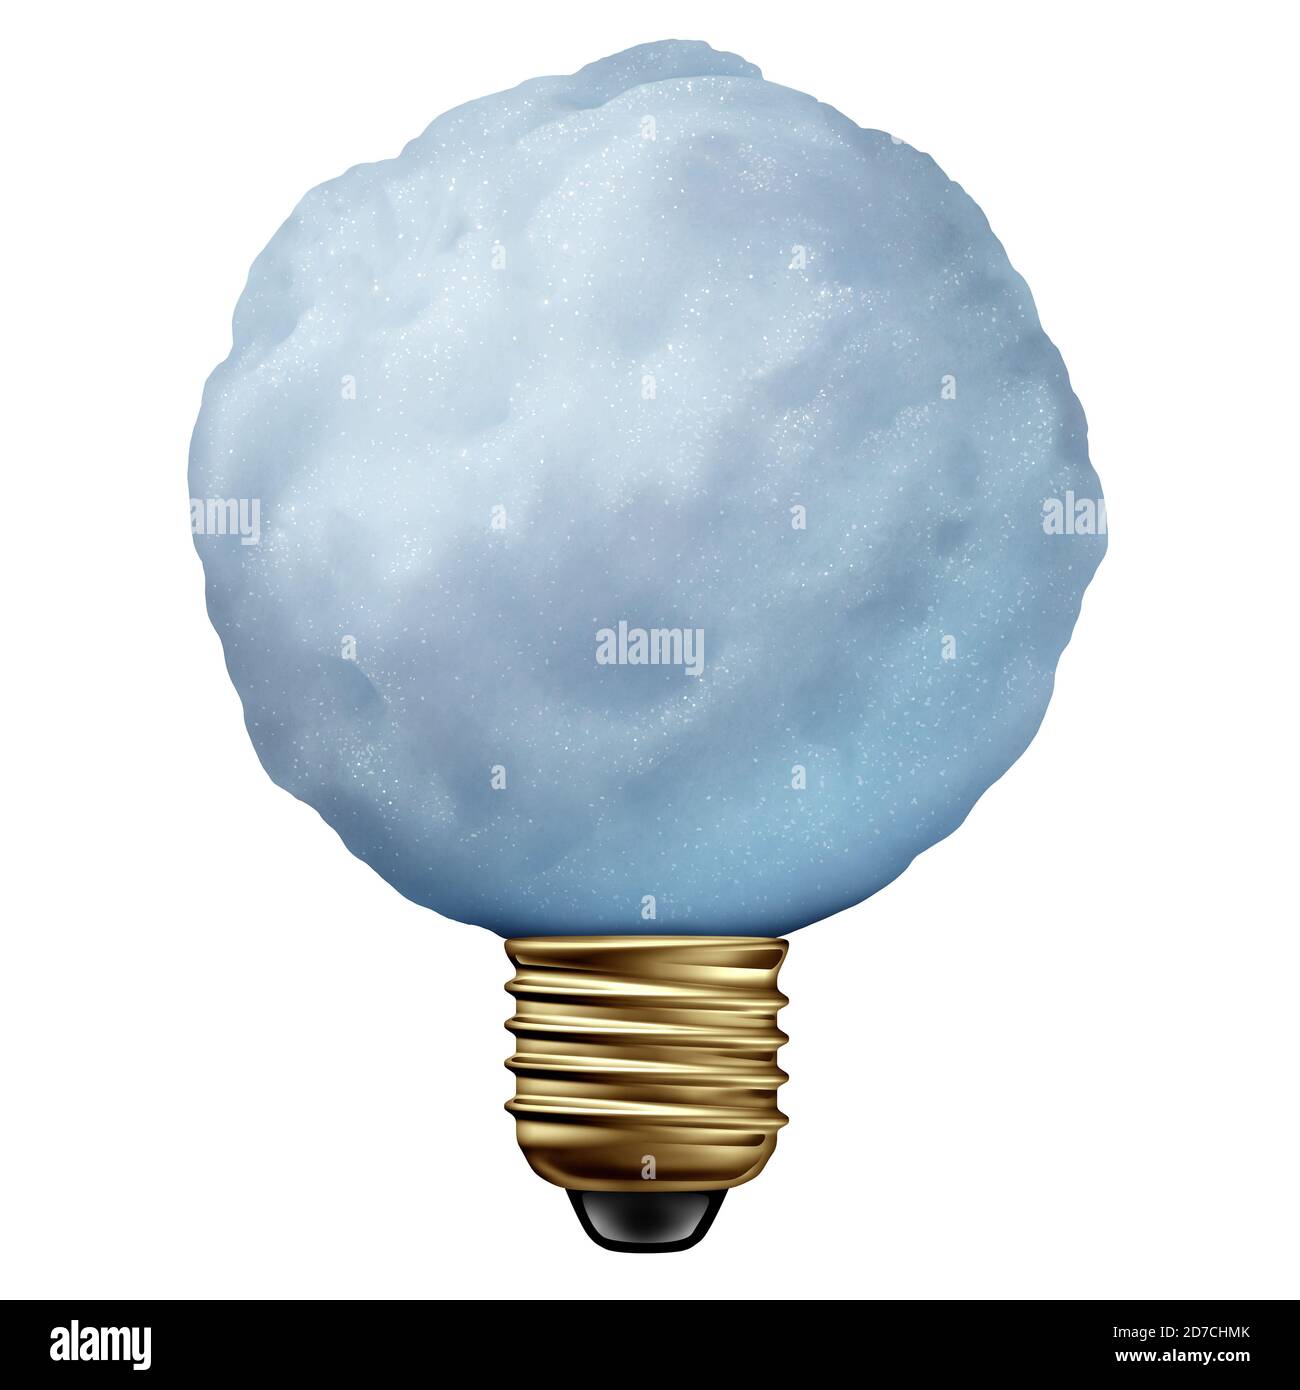 Ideas invernales como una bola de nieve creativa en forma de bombilla o bulbos de luz un cristal helado aislado sobre un fondo blanco como un símbolo para el frío. Foto de stock